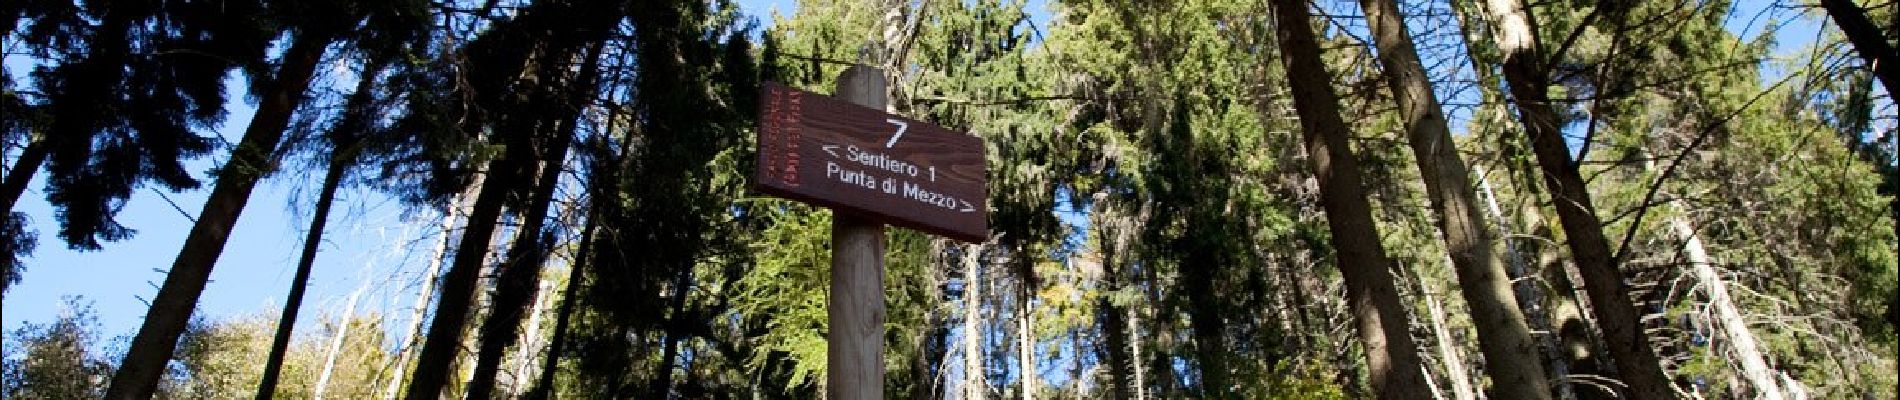 Trail On foot Varese - Sentiero 1/301: Prima Cappella - Forte di Orino - Photo